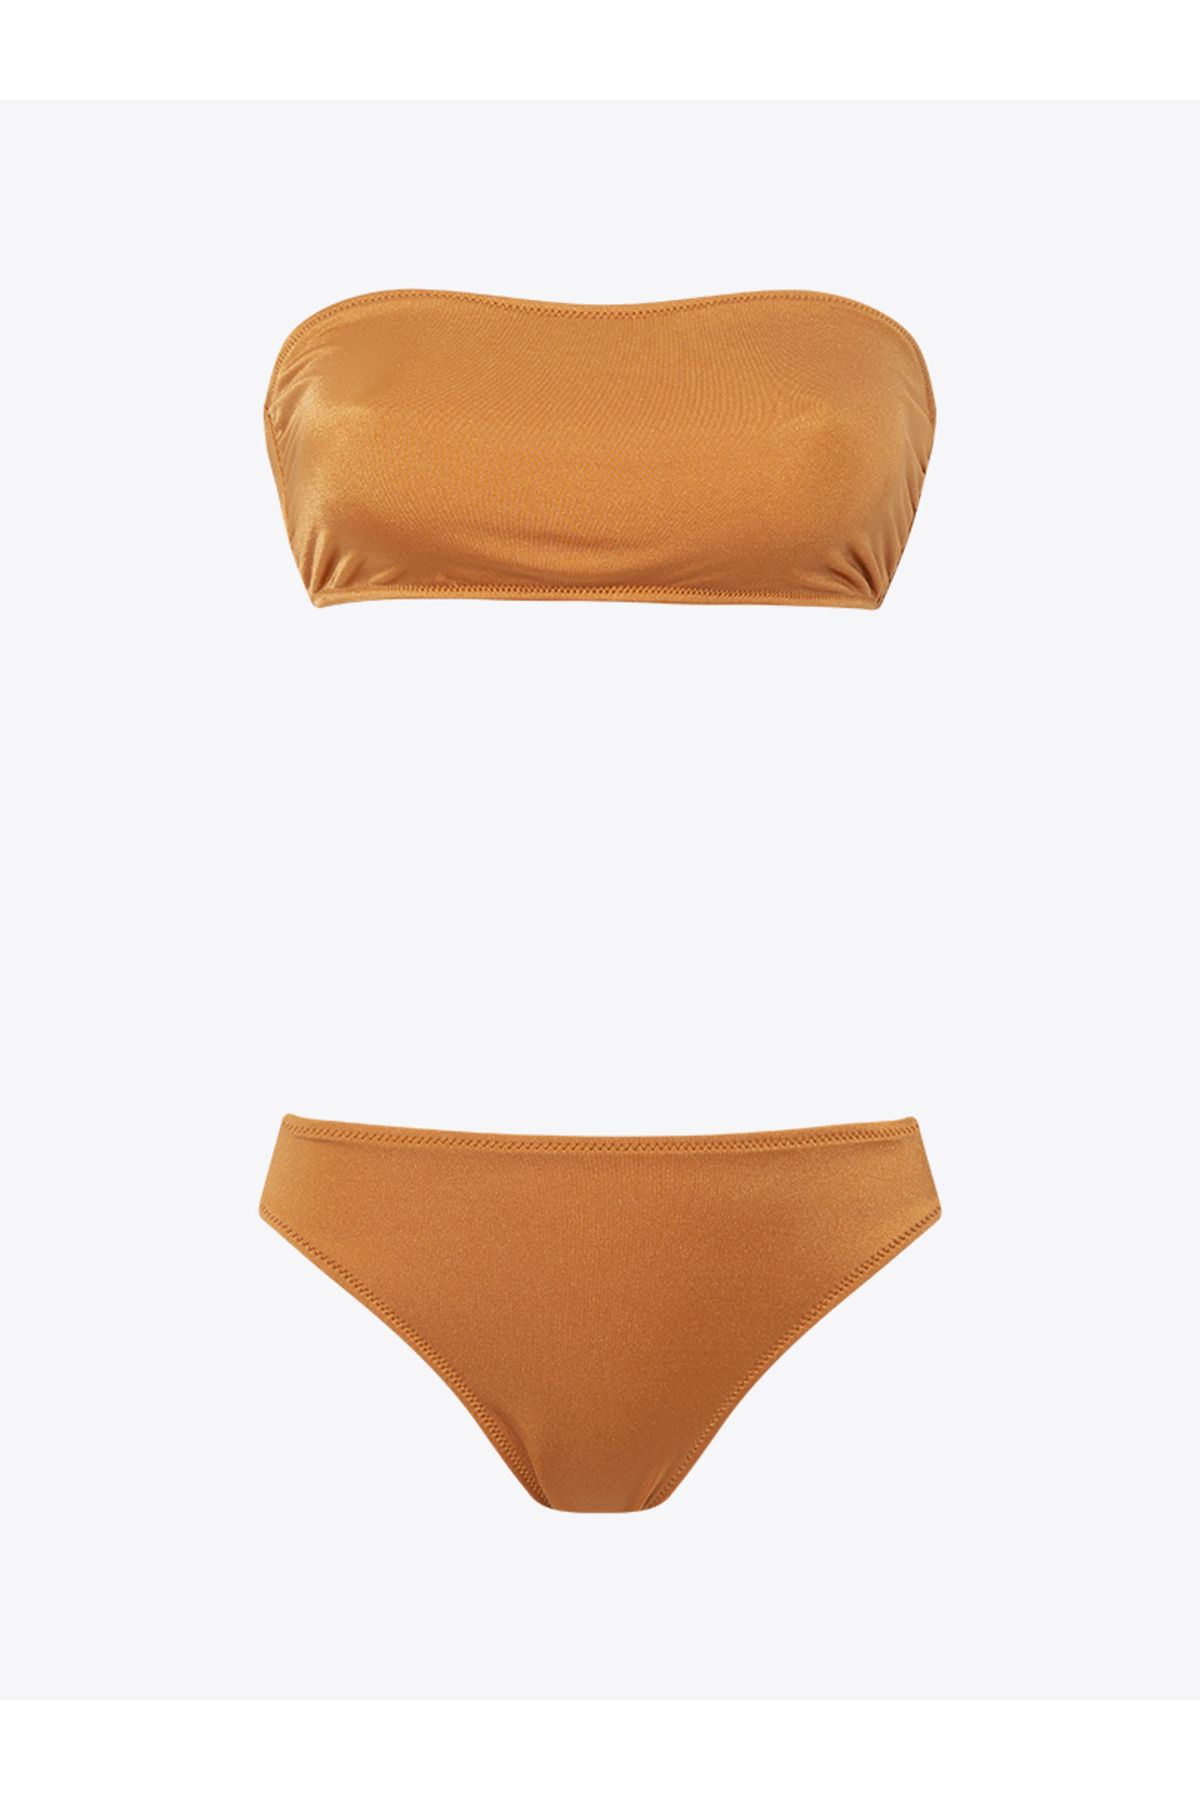 Rivus Straplez Kayısı Rengi Bikini Takımı - Oranj